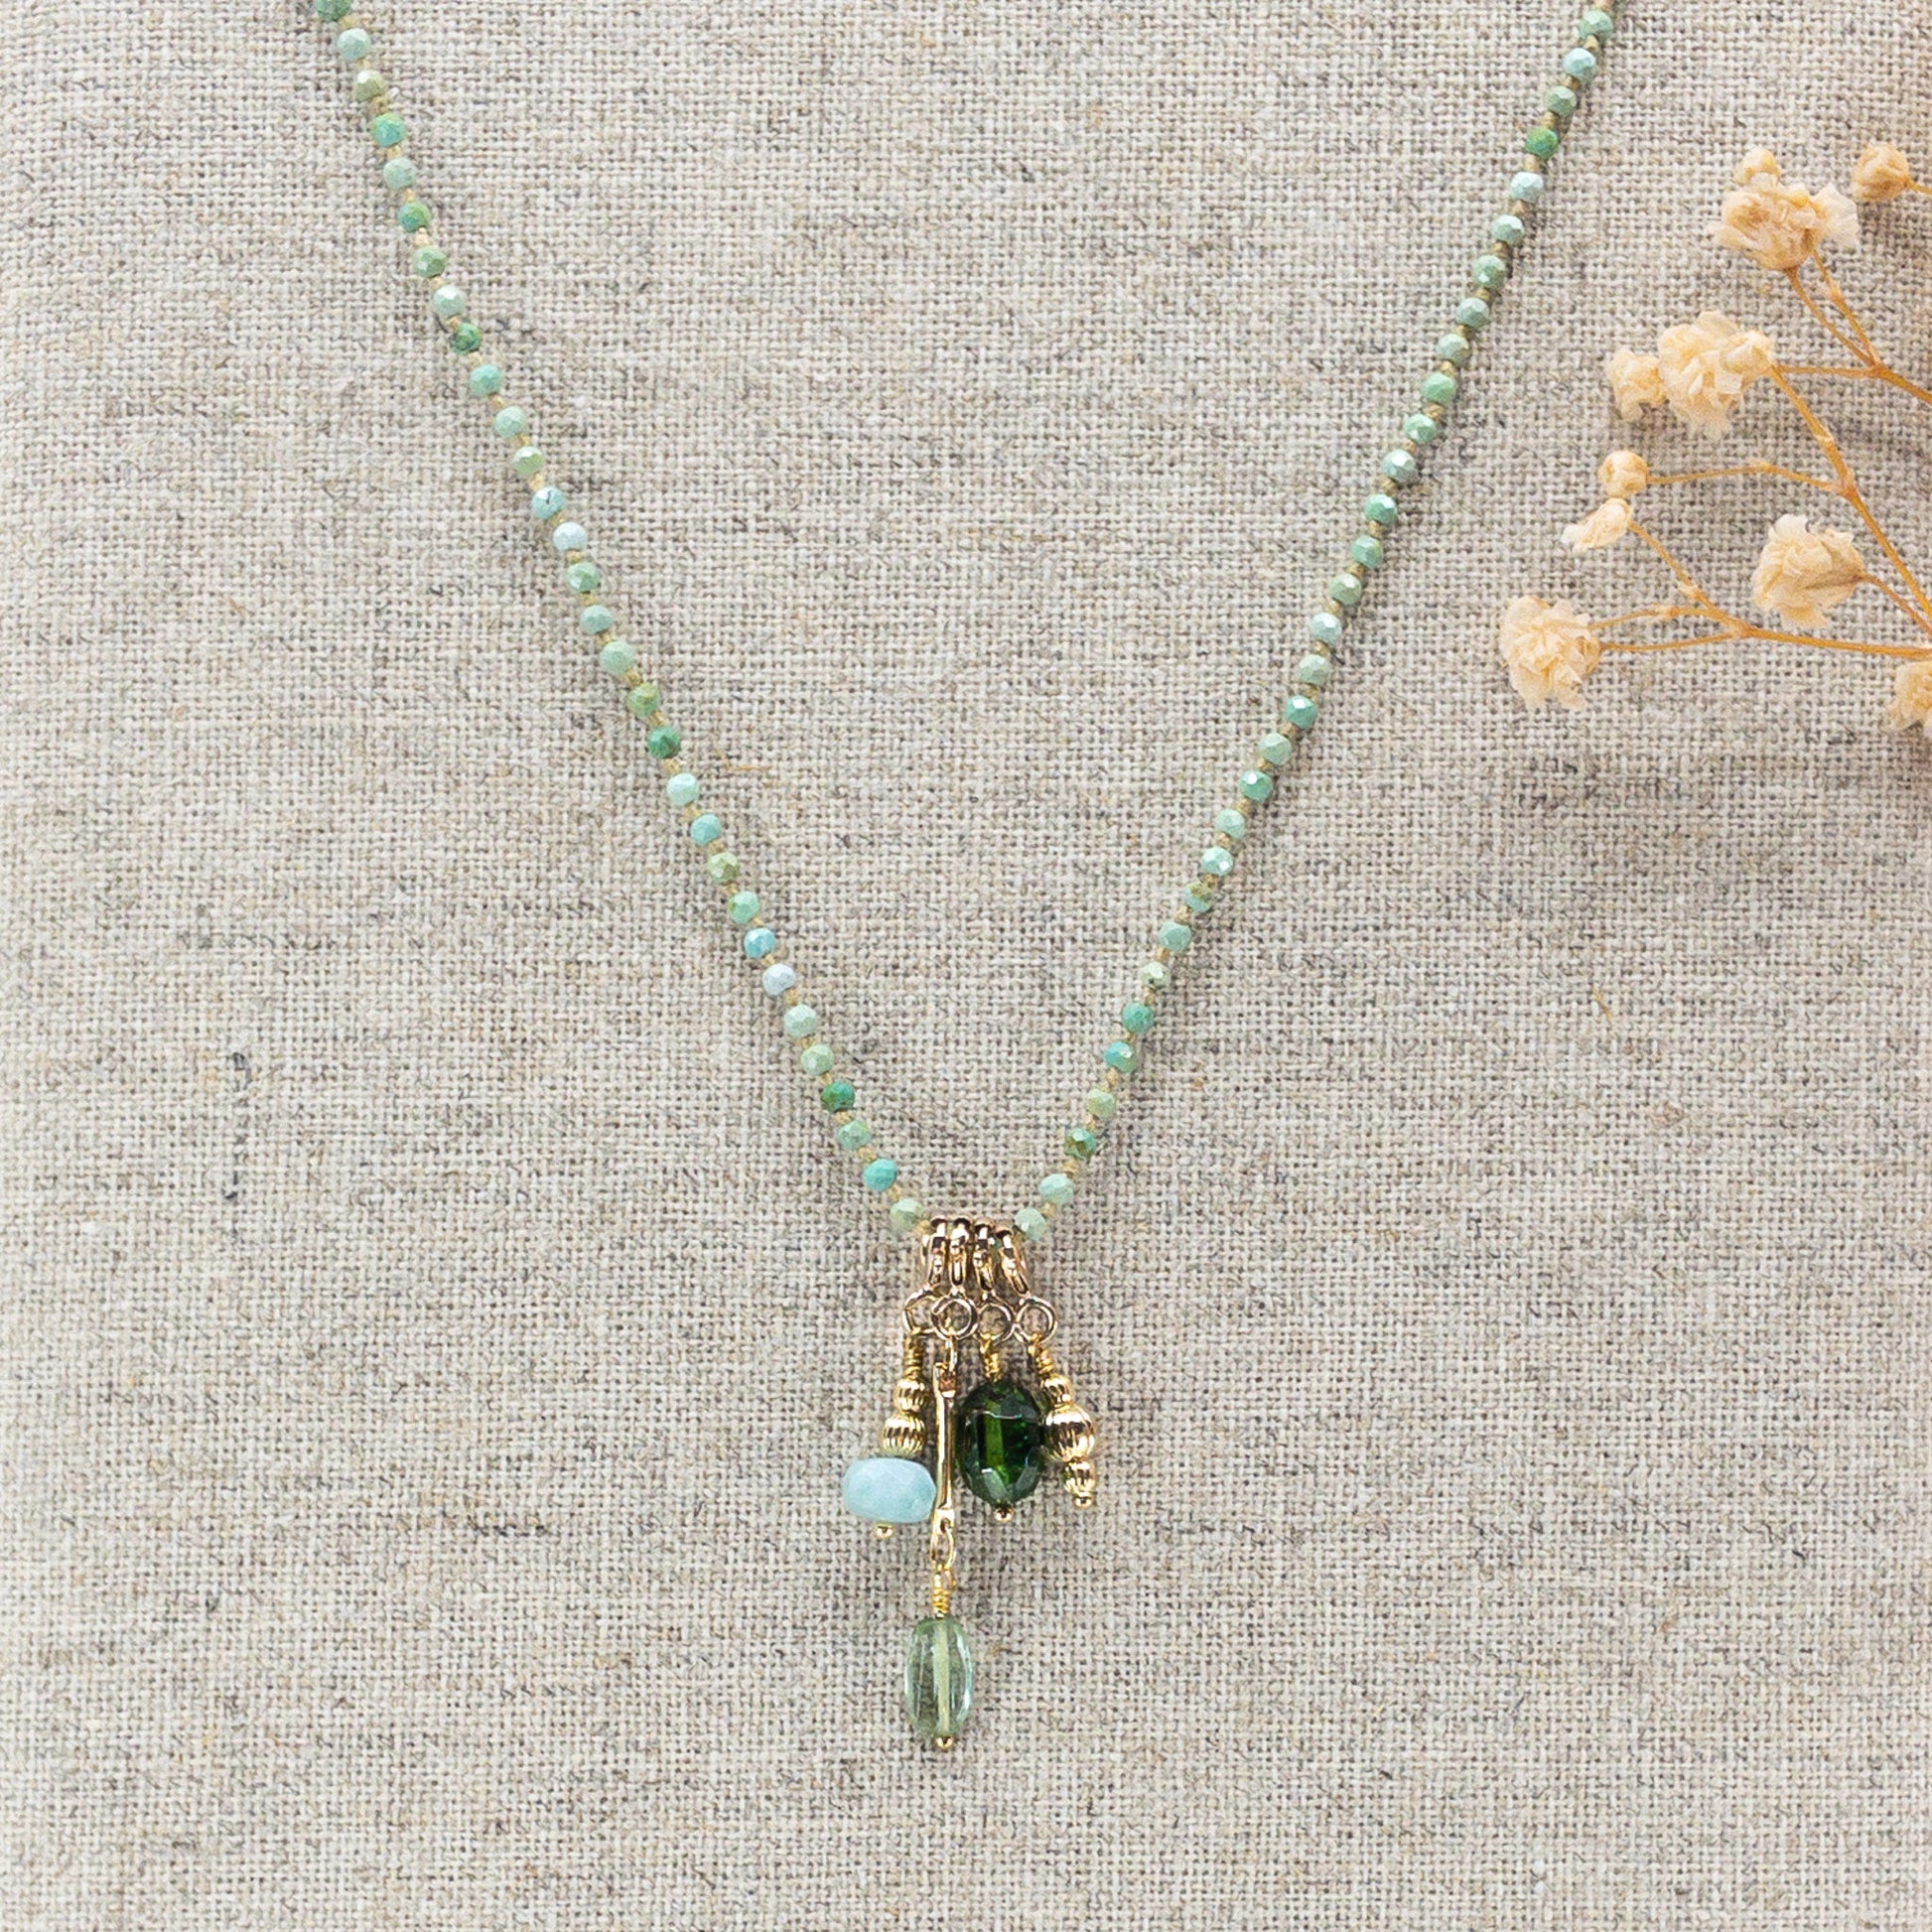 Collier 36 cm en Turquoise aux tons verts et 4 charms composés de différentes pierres fines naturelles et d'un pendentif plaqué or